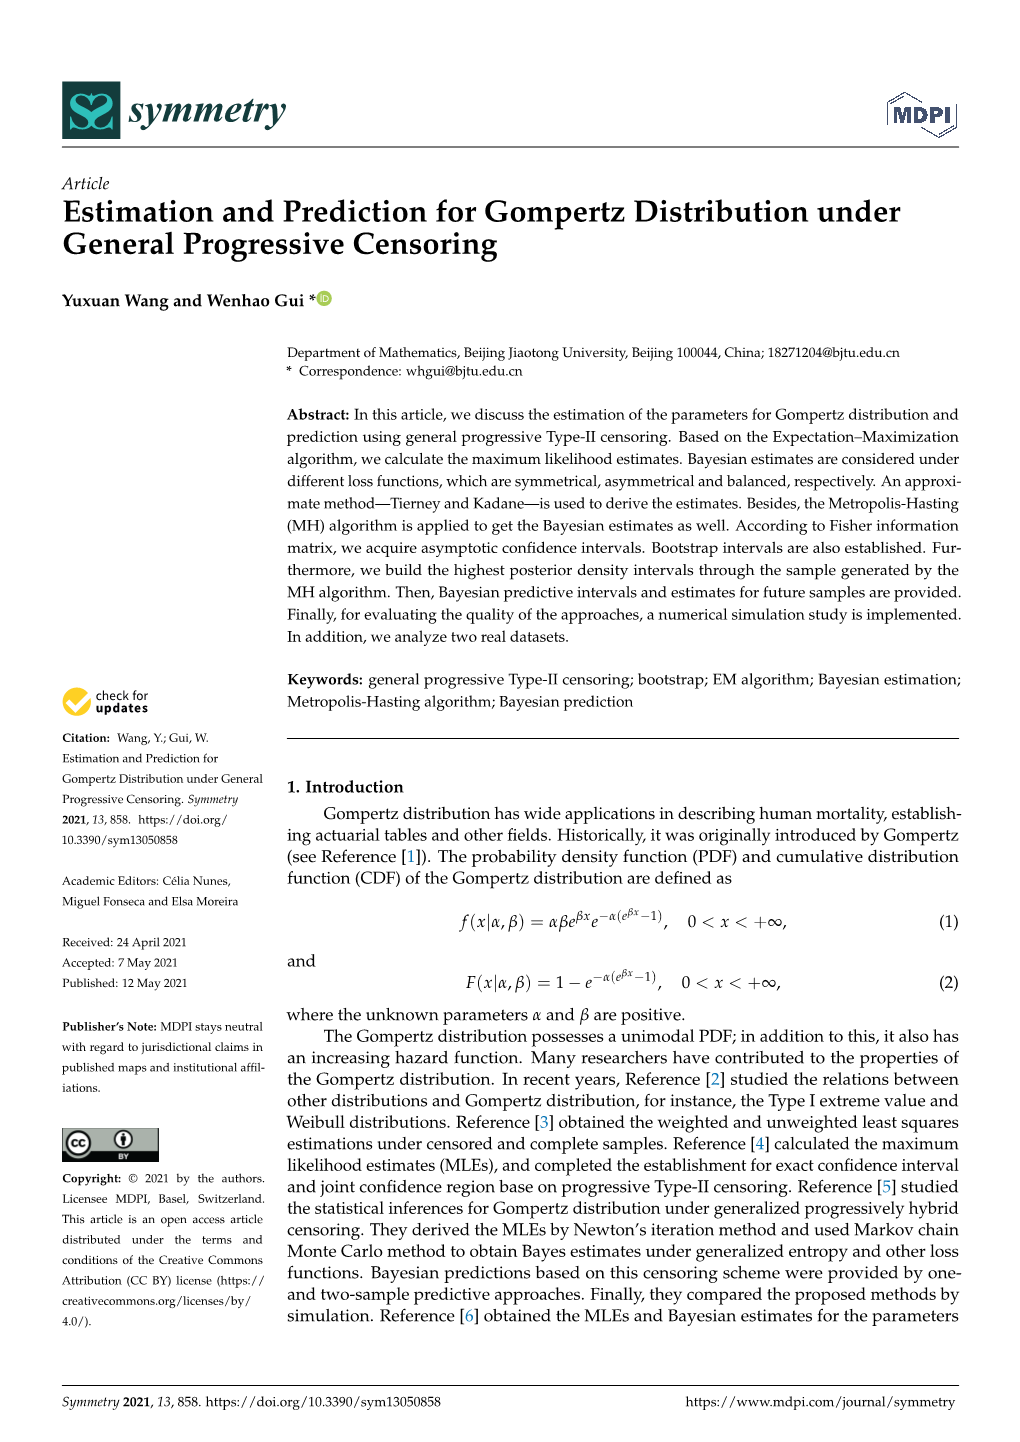 Estimation and Prediction for Gompertz Distribution Under General Progressive Censoring